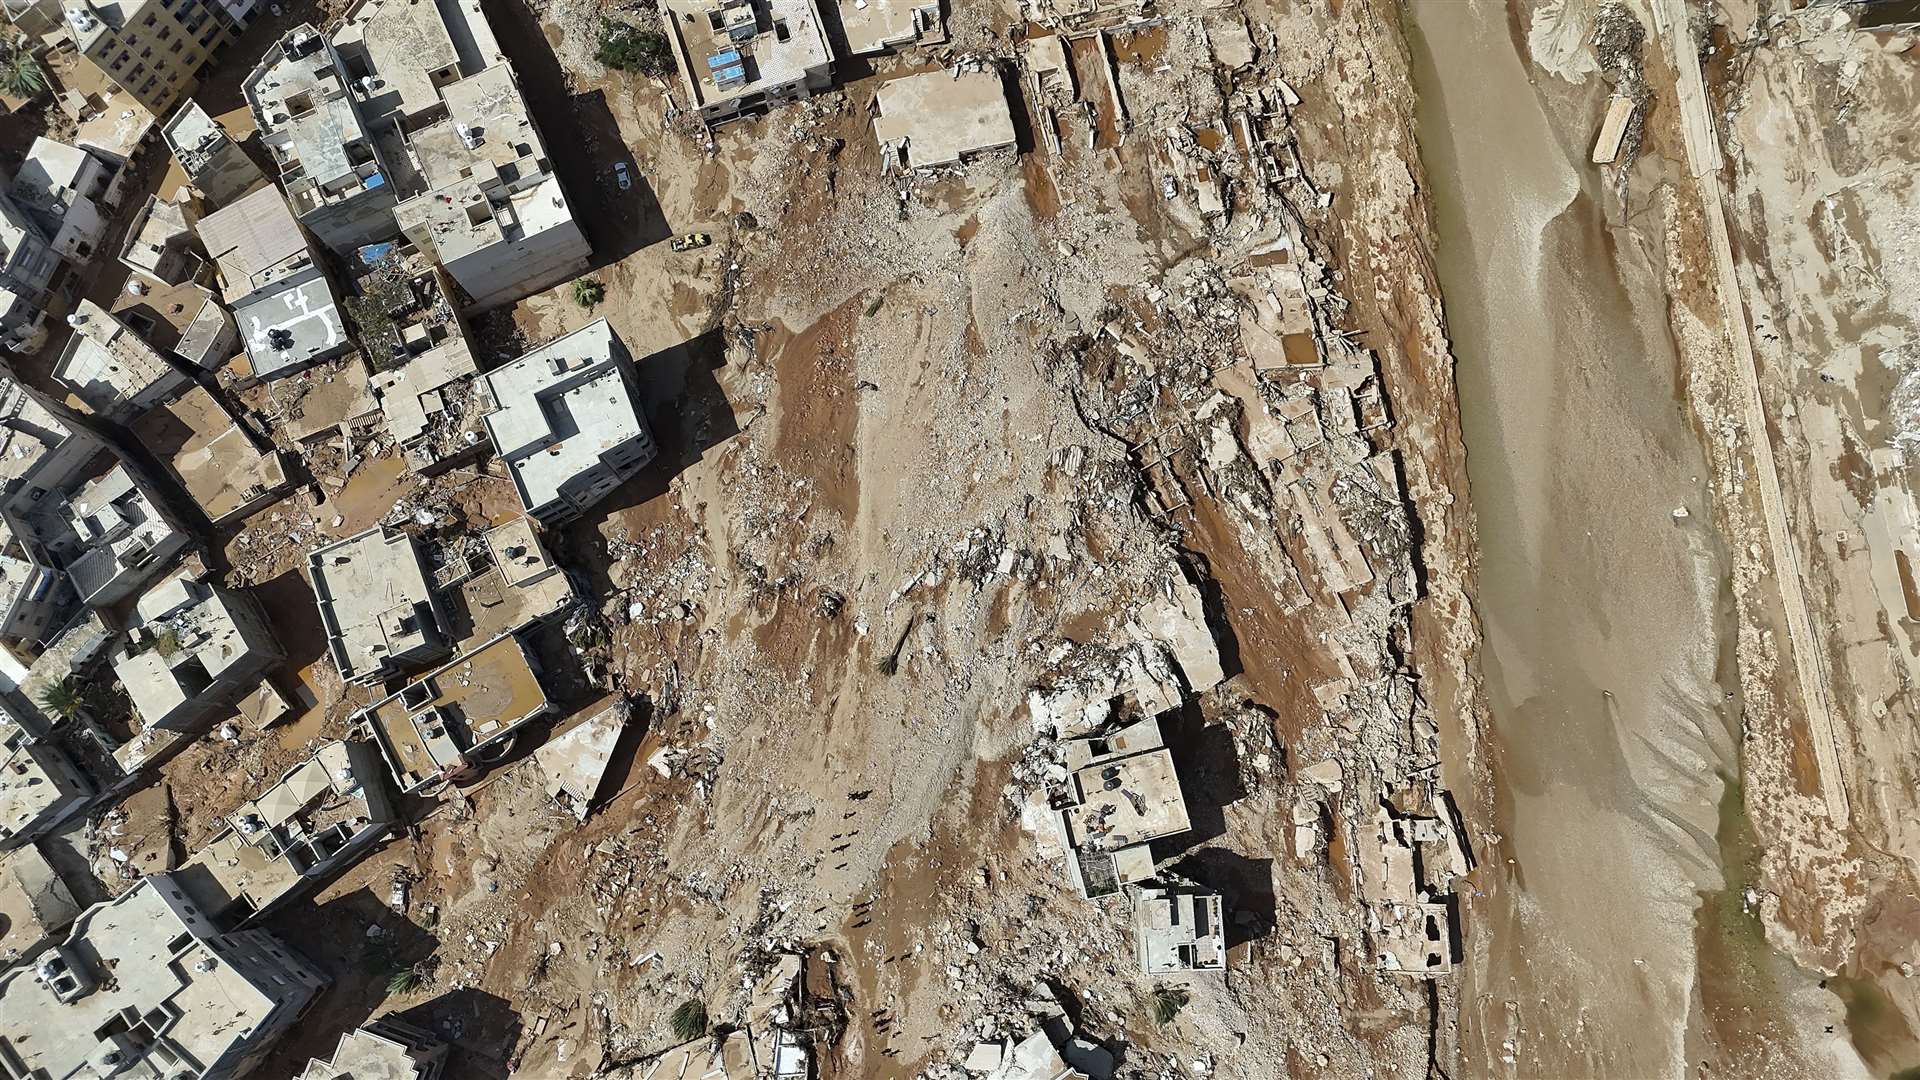 The flooded city of Derna, Libya (Muhammad J Elalwany/AP)